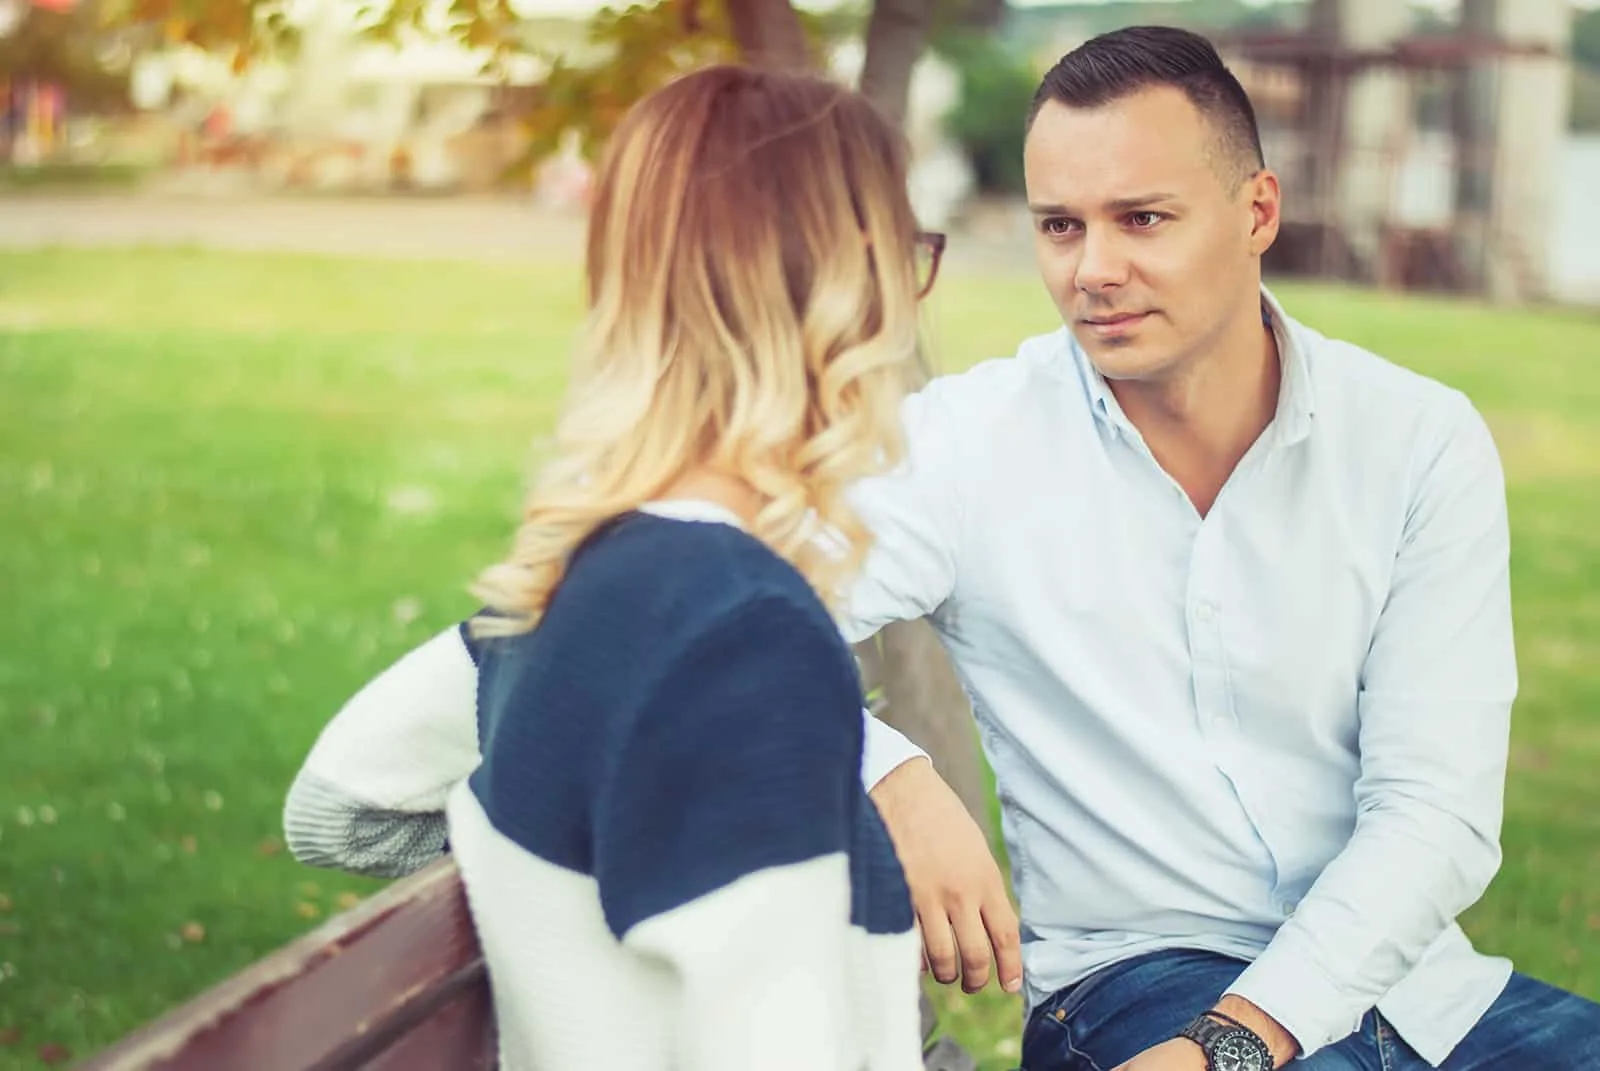 Ein Mann spricht mit einer Frau, die neben ihm auf der Bank sitzt